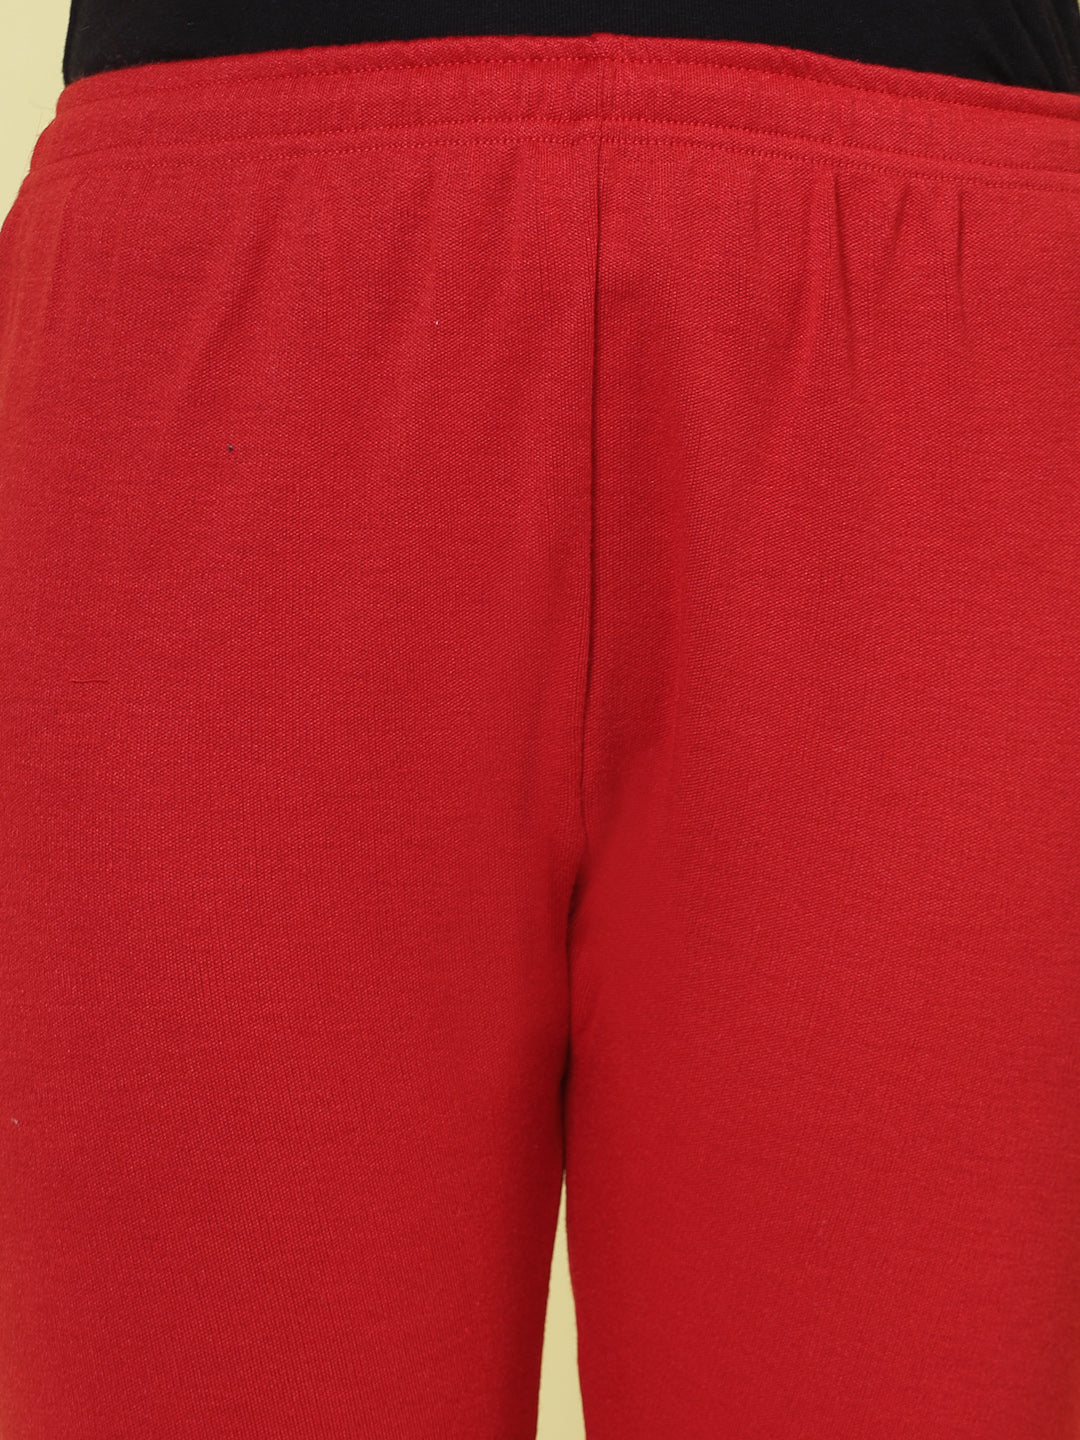 Red & Dark Fawn Solid Woollen Leggings (Pack of 2)